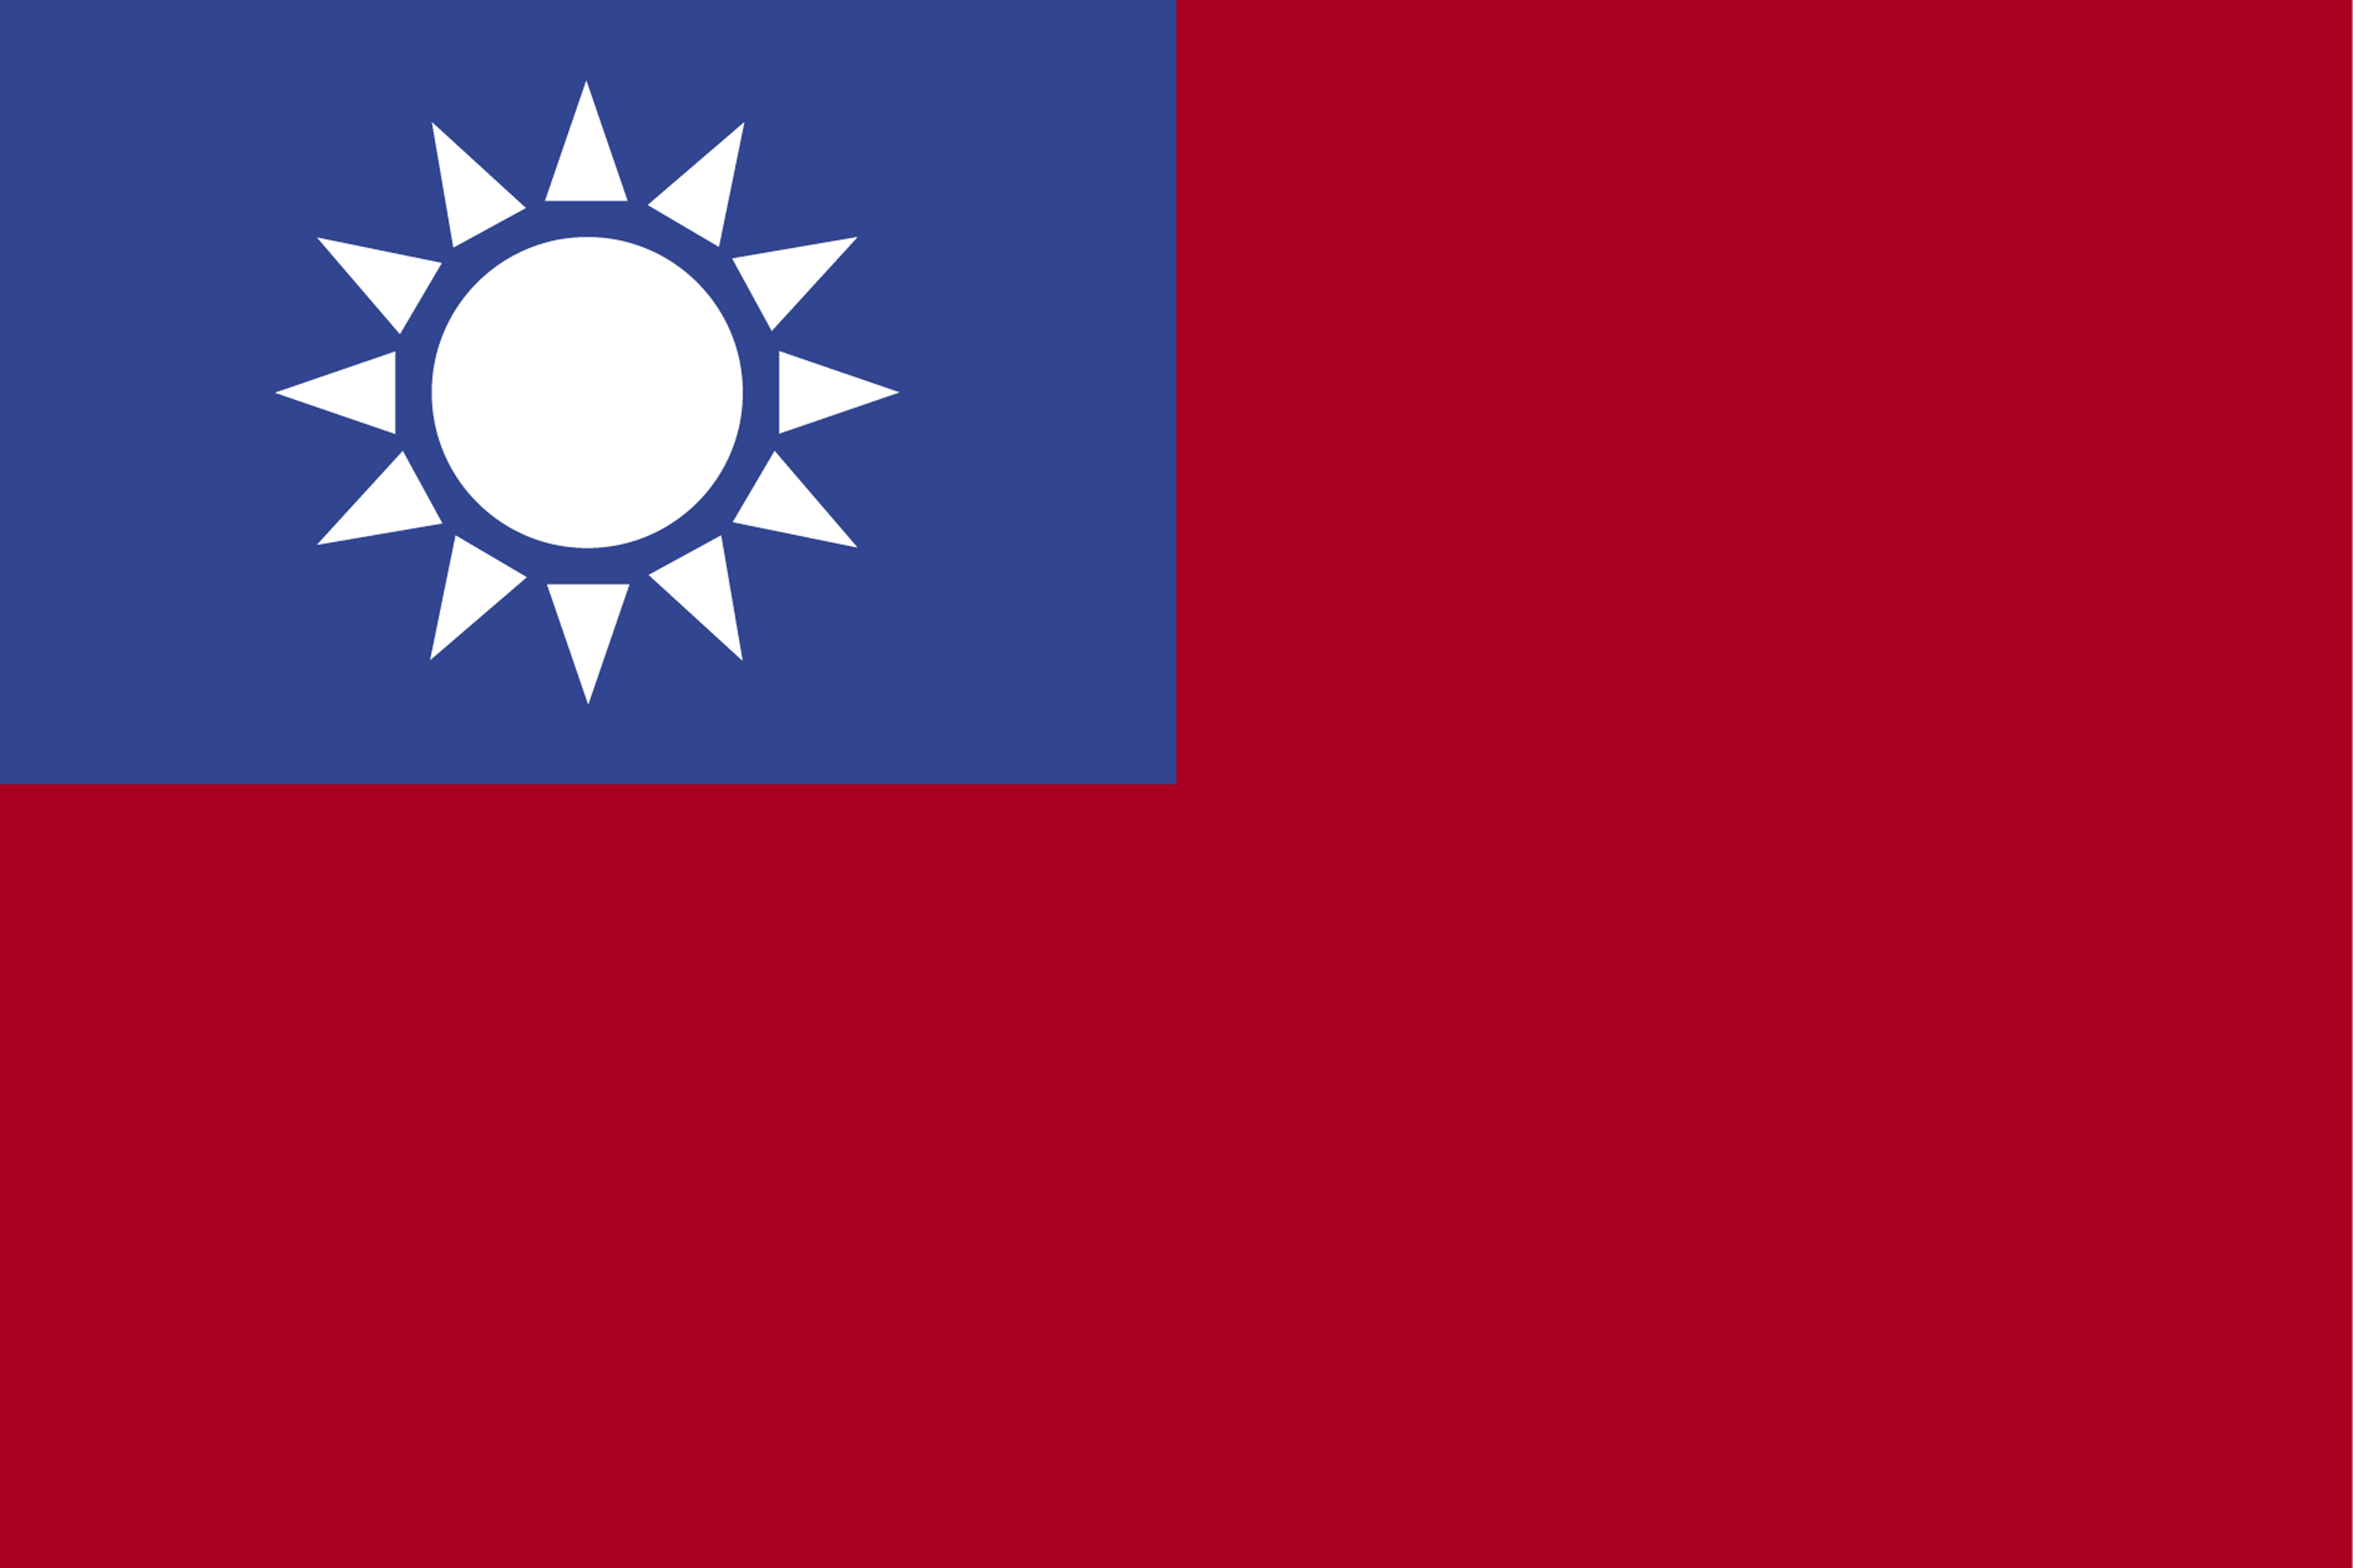 在旗杆的台湾旗子 库存照片. 图片 包括有 蓝色, 爱国心, 城市, 爱国者, 飞行, 背包, 象征, 可实现 - 91178058